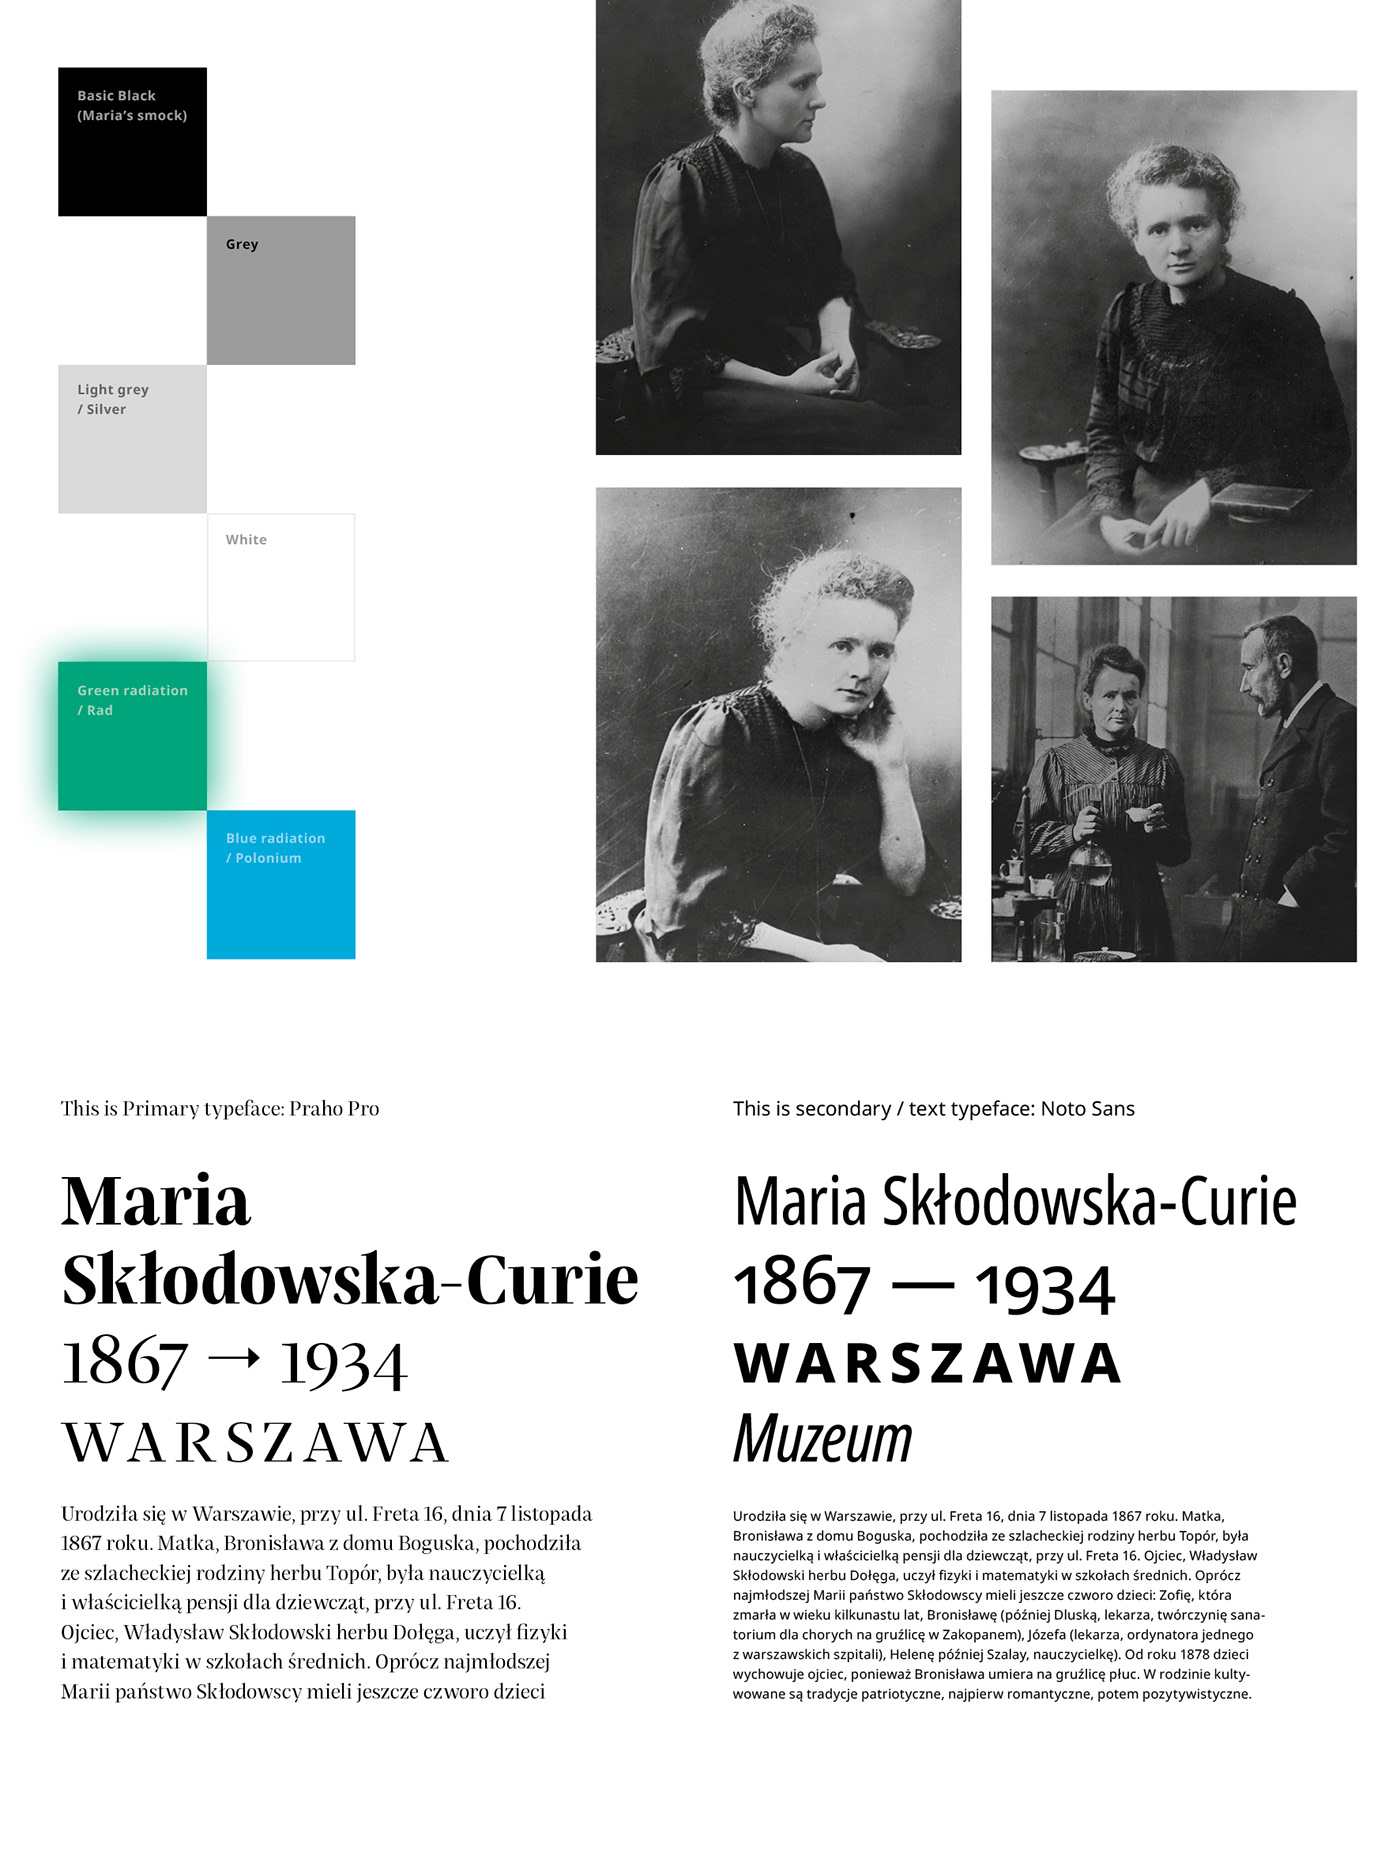 museum skłodowska-curie warsaw nobel brand identity guideliness